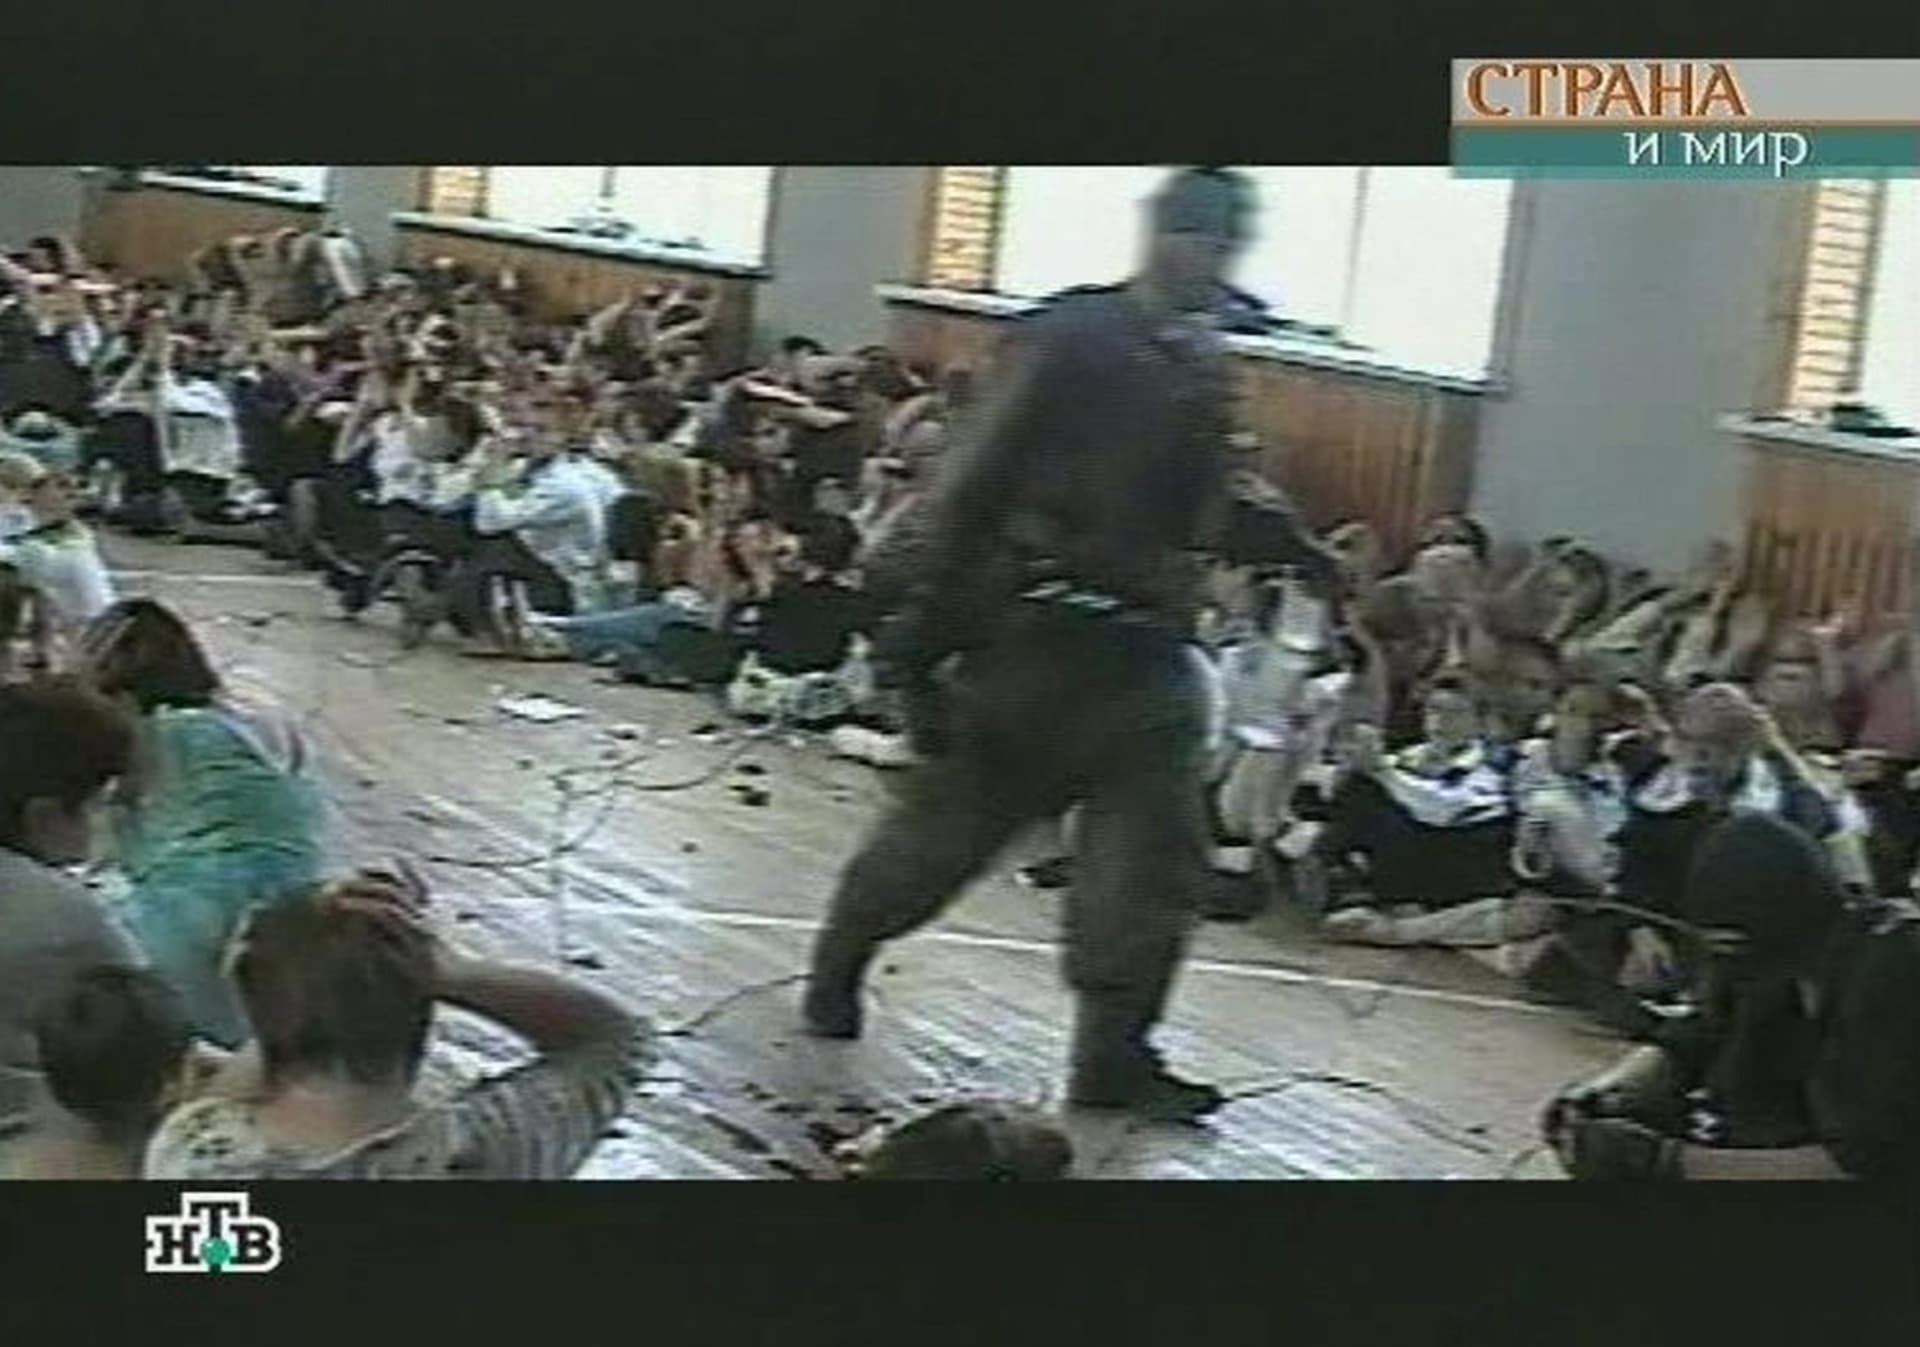 Ruský Beslan, rok 2004. Jeden z nejtragičtějších únosů moderní éry - v tamní škole bylo zabito minimálně 330 civilistů, z toho 186 dětí. 783 lidí bylo zraněno.